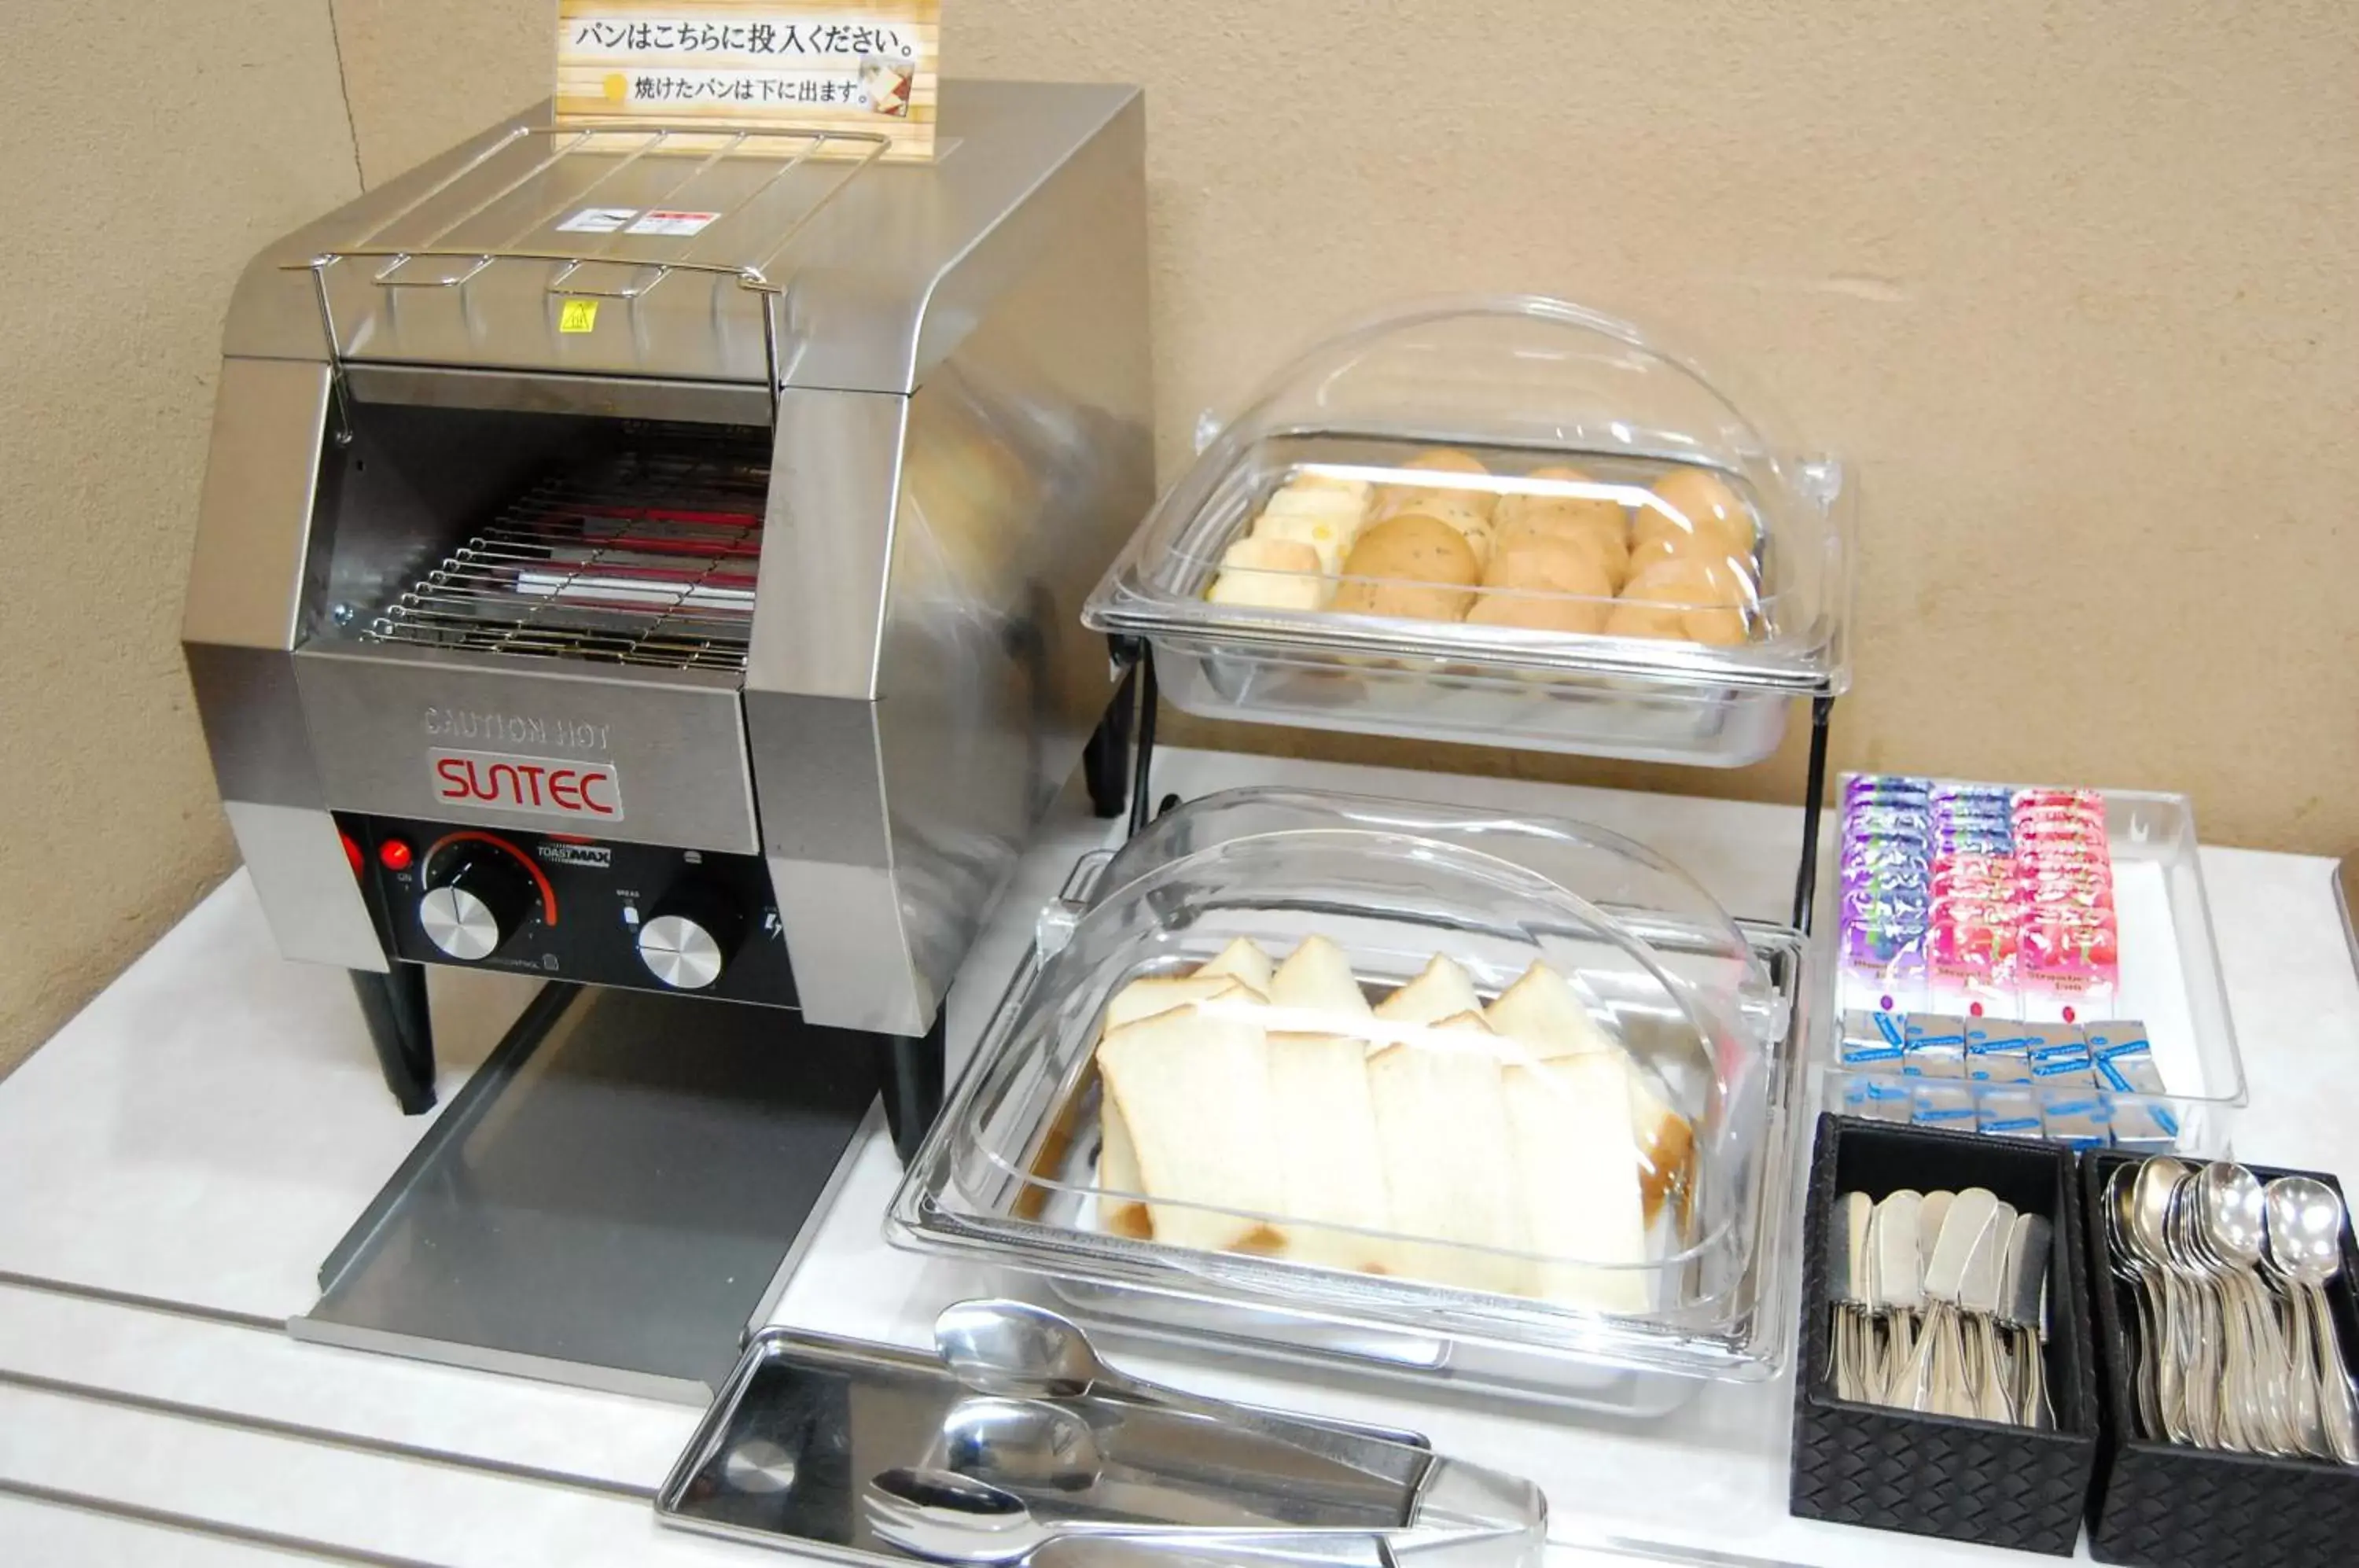 Buffet breakfast in Izumo Royal Hotel